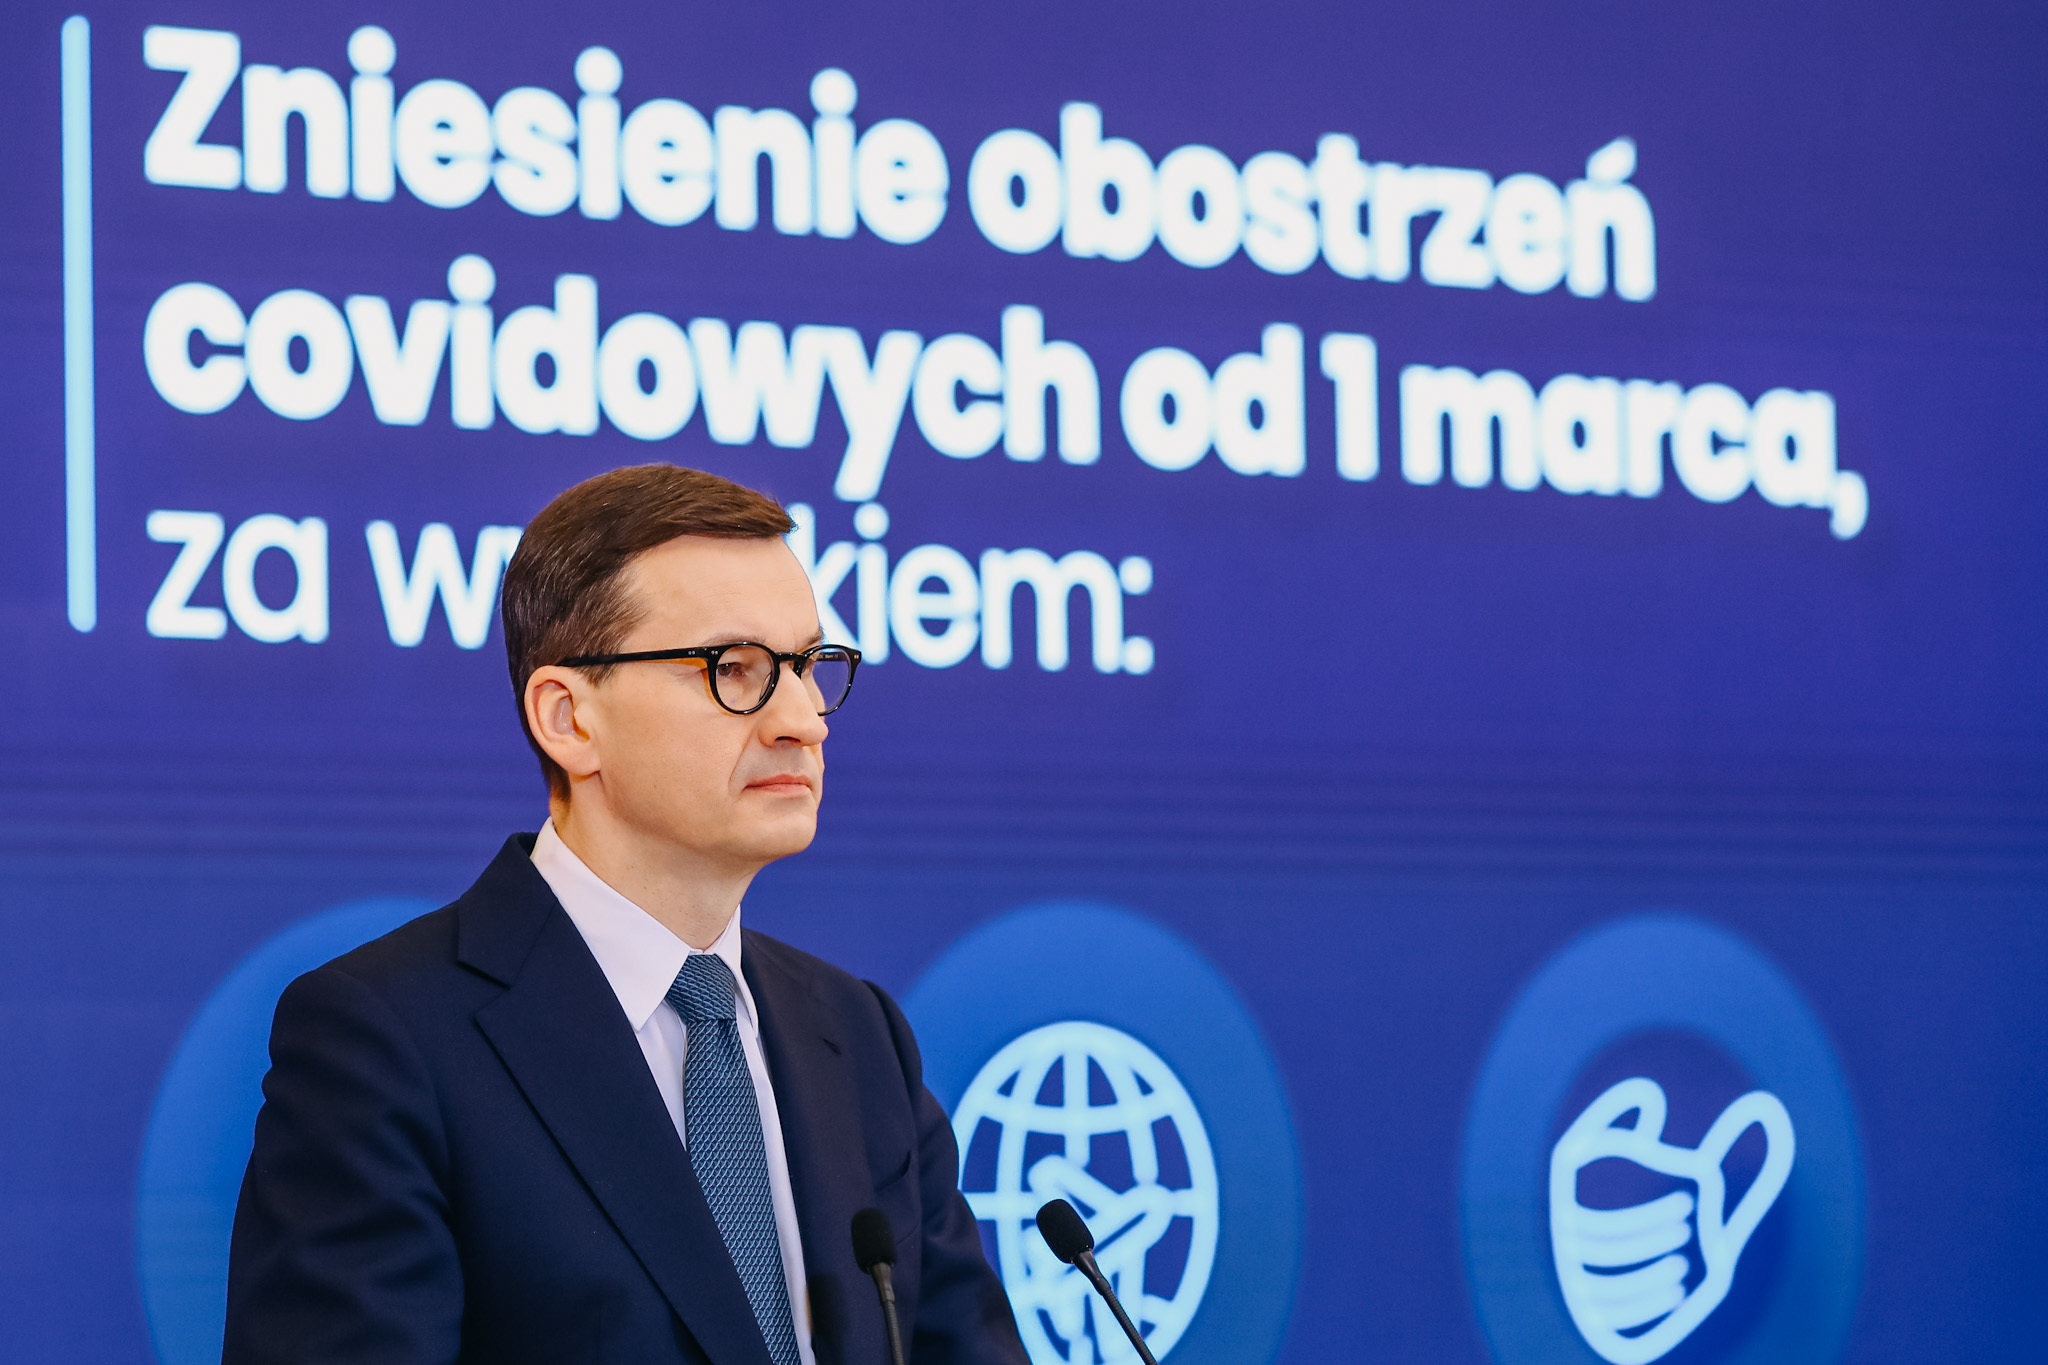 Premier Mateusz Morawiecki podczas konferencji prasowej